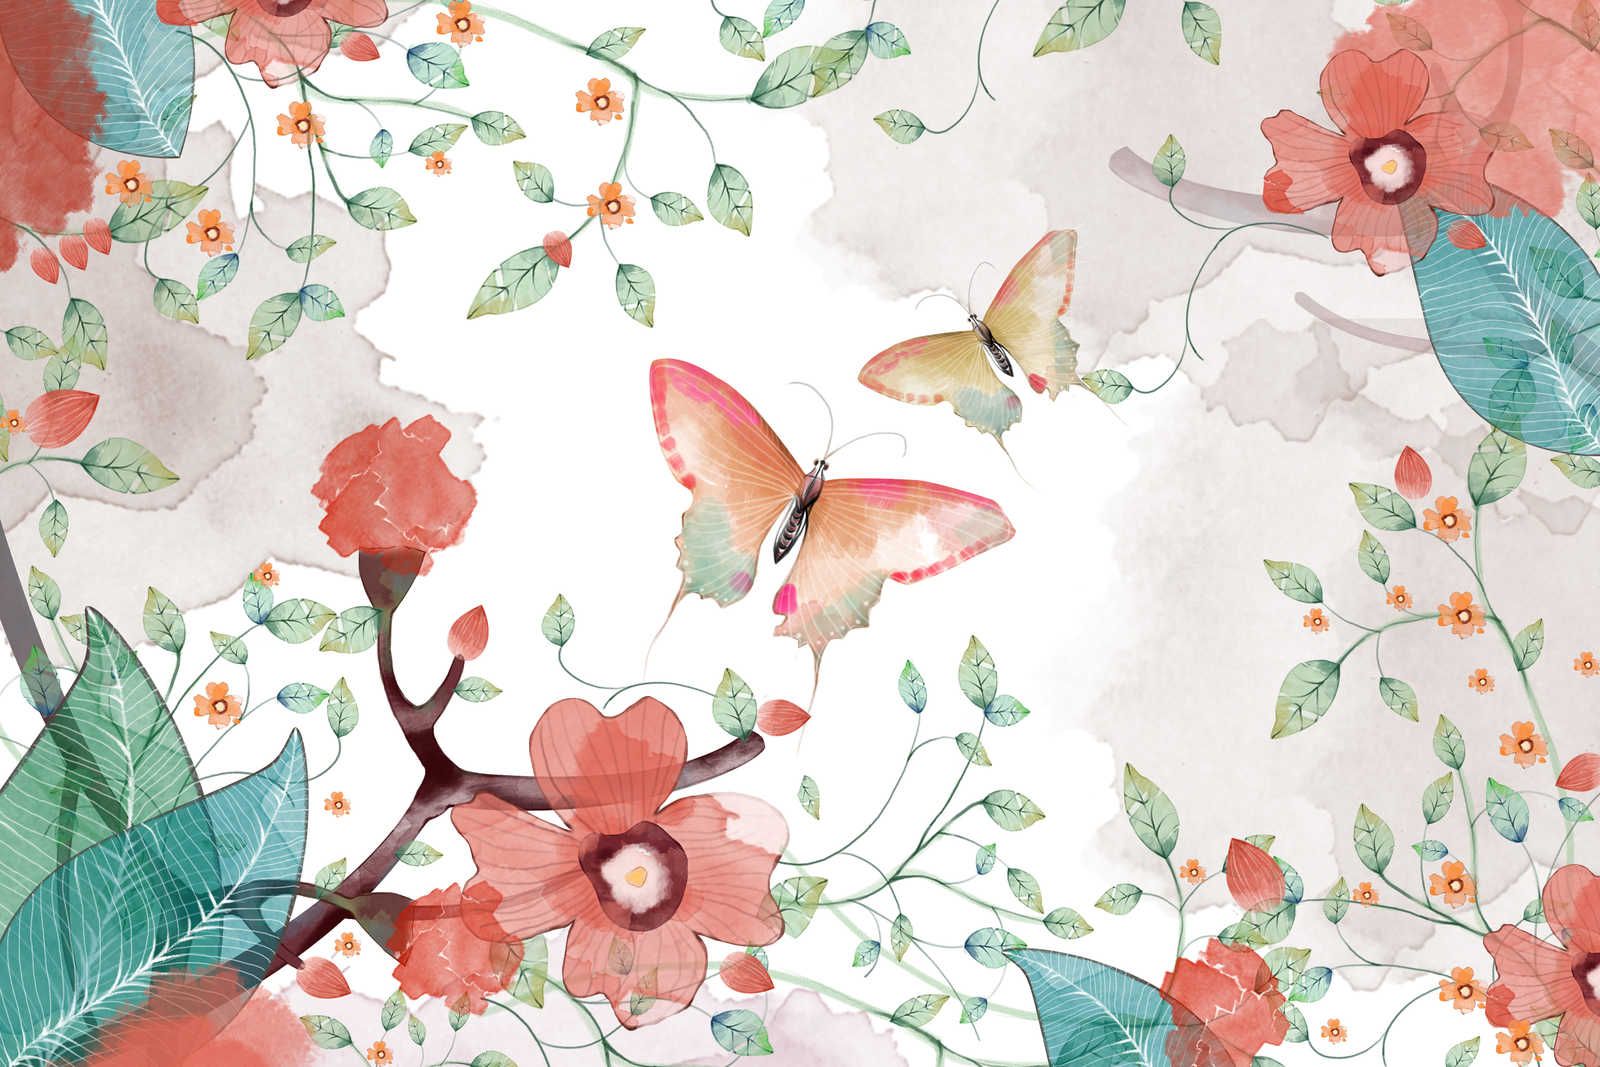             Leinwand floral mit Blättern und Schmetterlingen – 90 cm x 60 cm
        